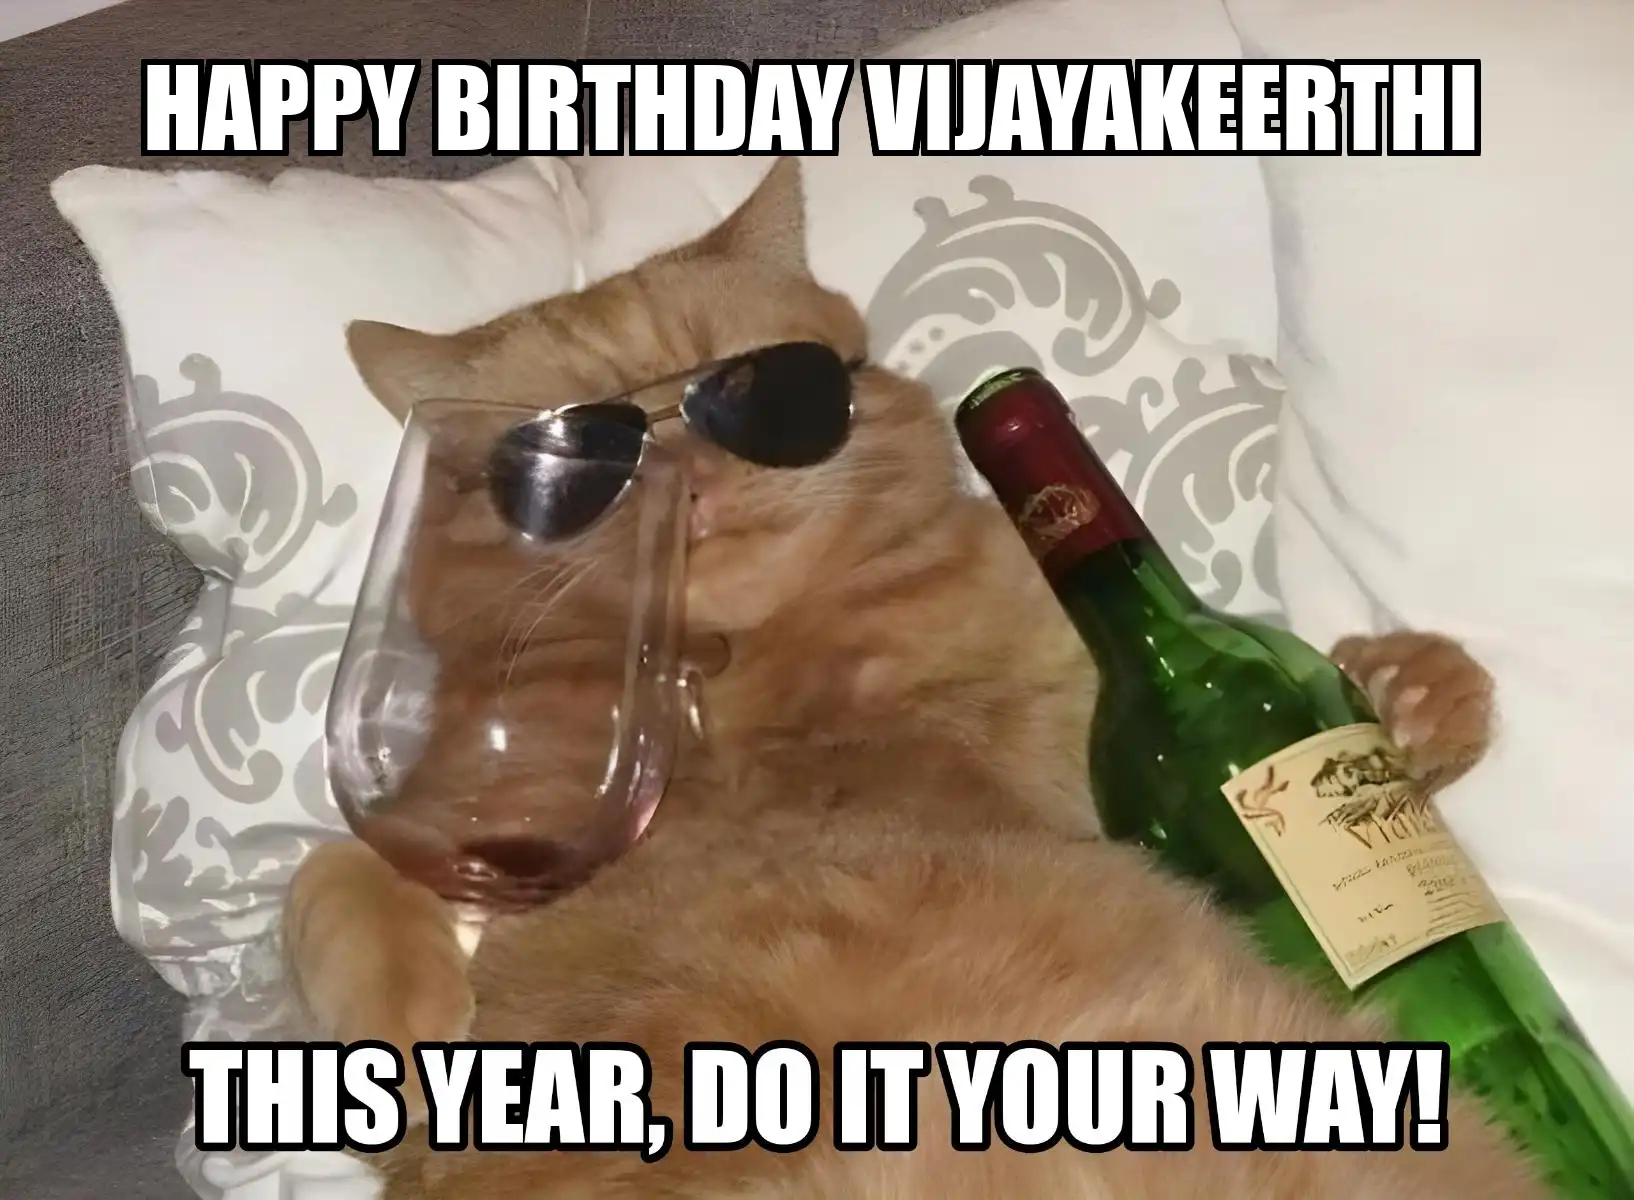 Happy Birthday Vijayakeerthi This Year Do It Your Way Meme